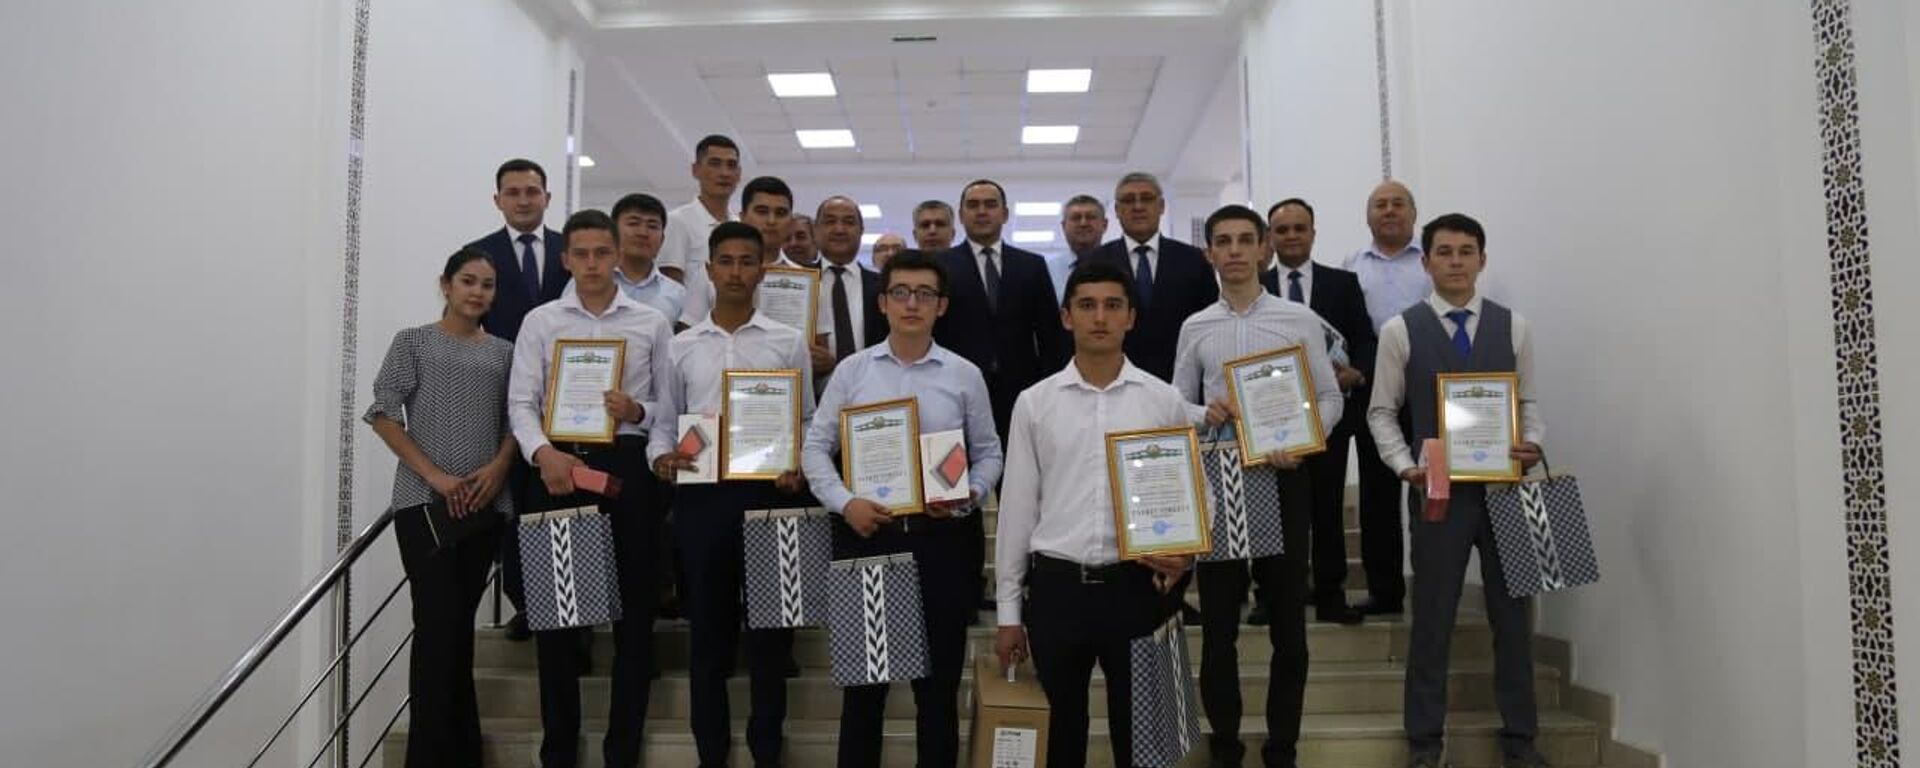 Узбекские студенты завоевали 15 медалей на Международной математической олимпиаде - Sputnik Узбекистан, 1920, 13.08.2021